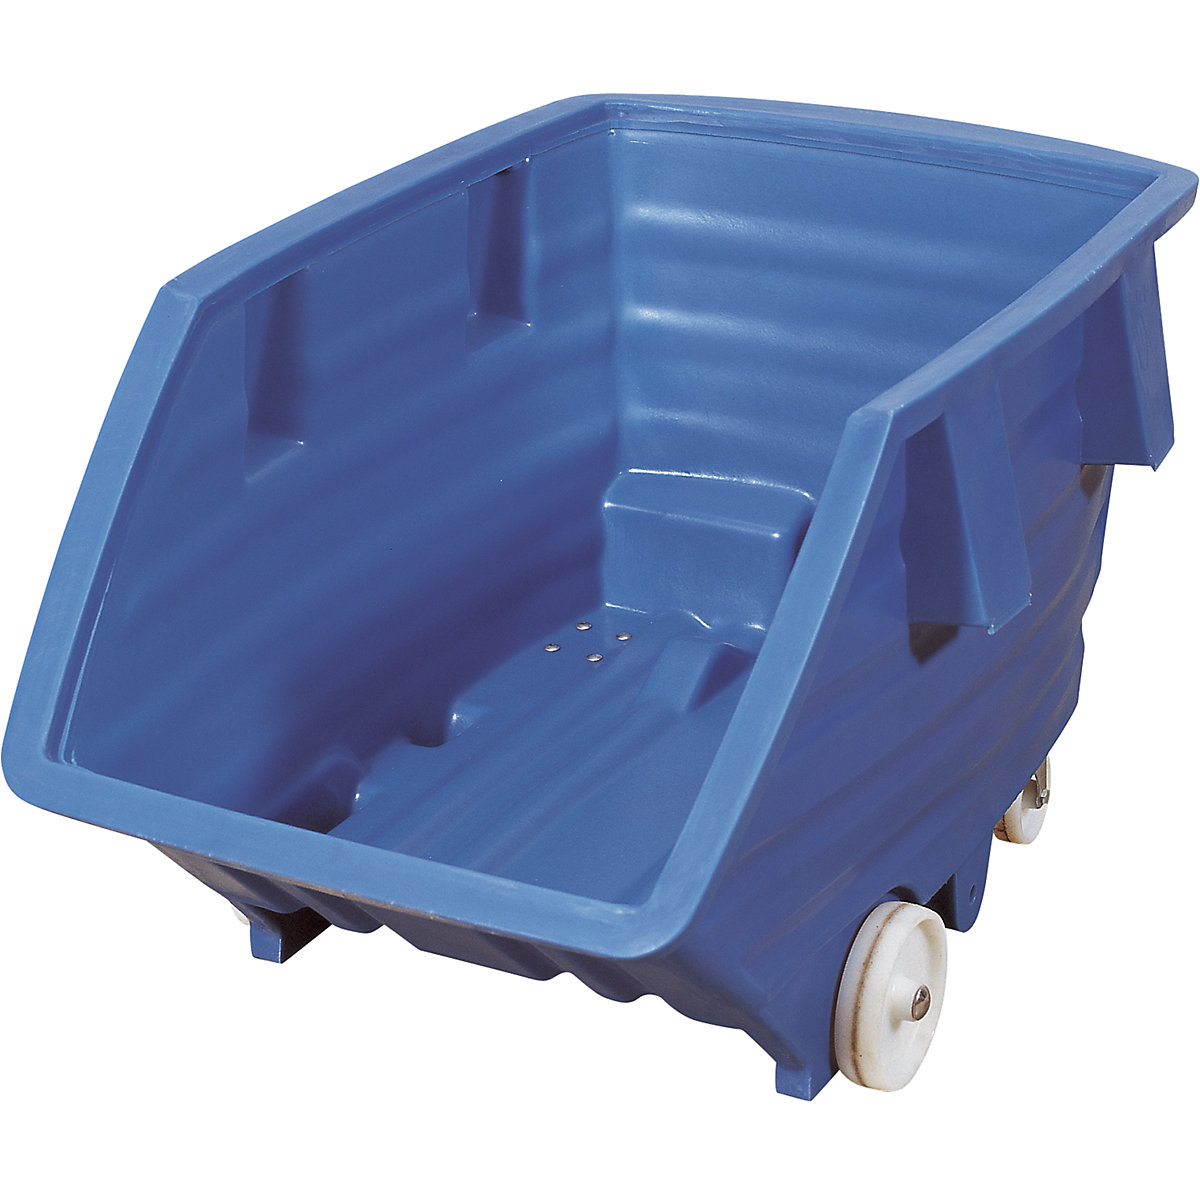 Prekucna posoda iz polietilena, s kolesi, prostornina 0,5 m³, modre barve-11